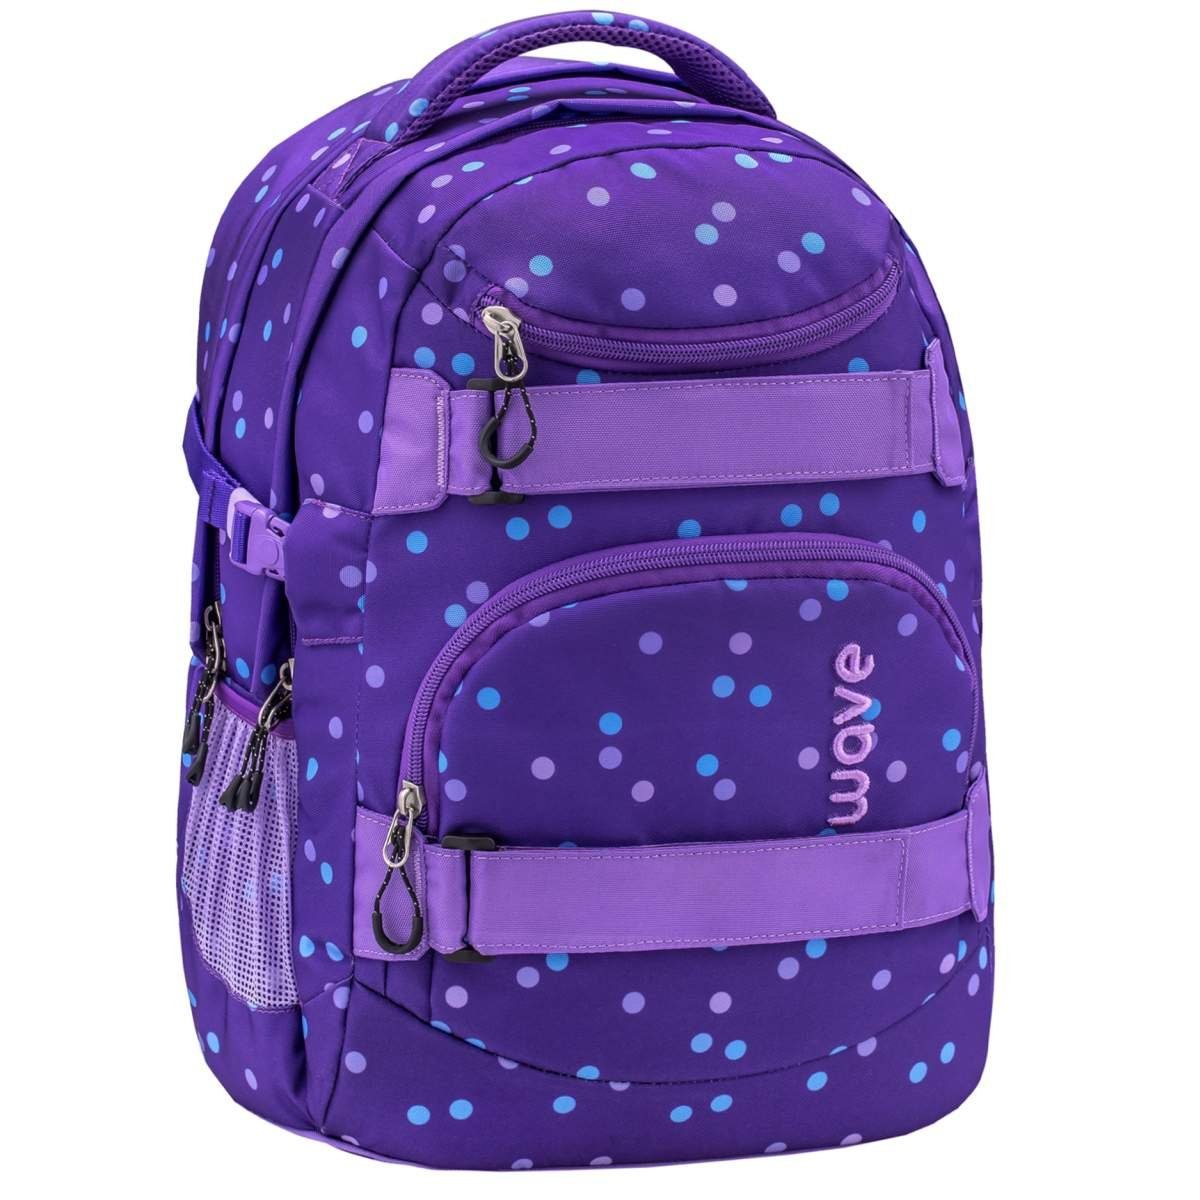 Dots ab Teenager weiterführende 5. Schultasche, Schulrucksack Mädchen Purple Wave Infinity, Schule, Klasse,